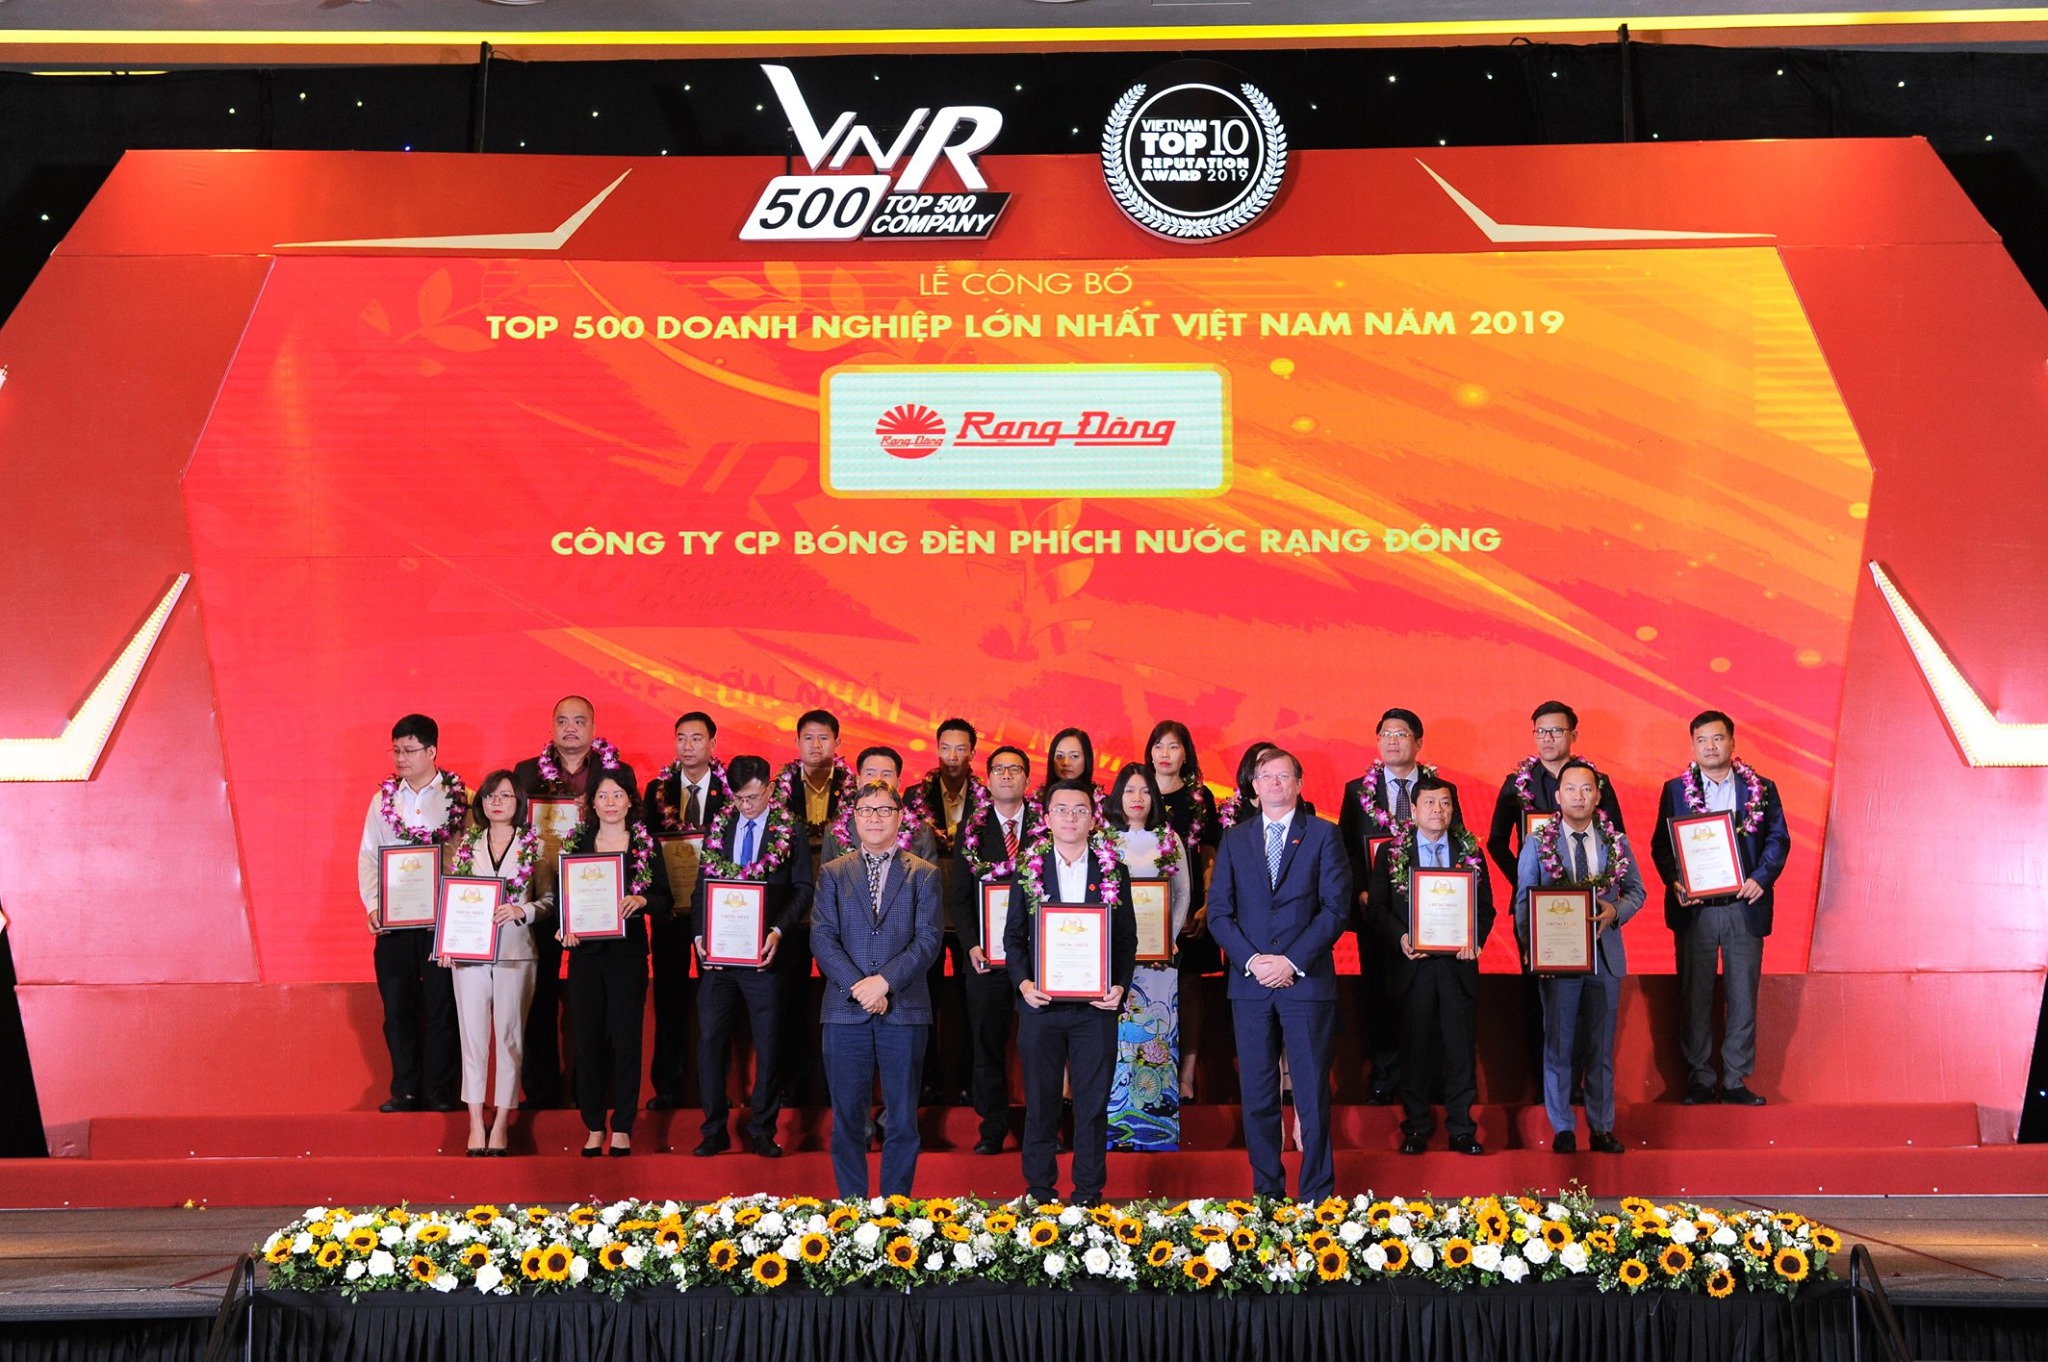 Rạng Đông lọt TOP500 doanh nghiệp lớn nhất Việt Nam năm 2019